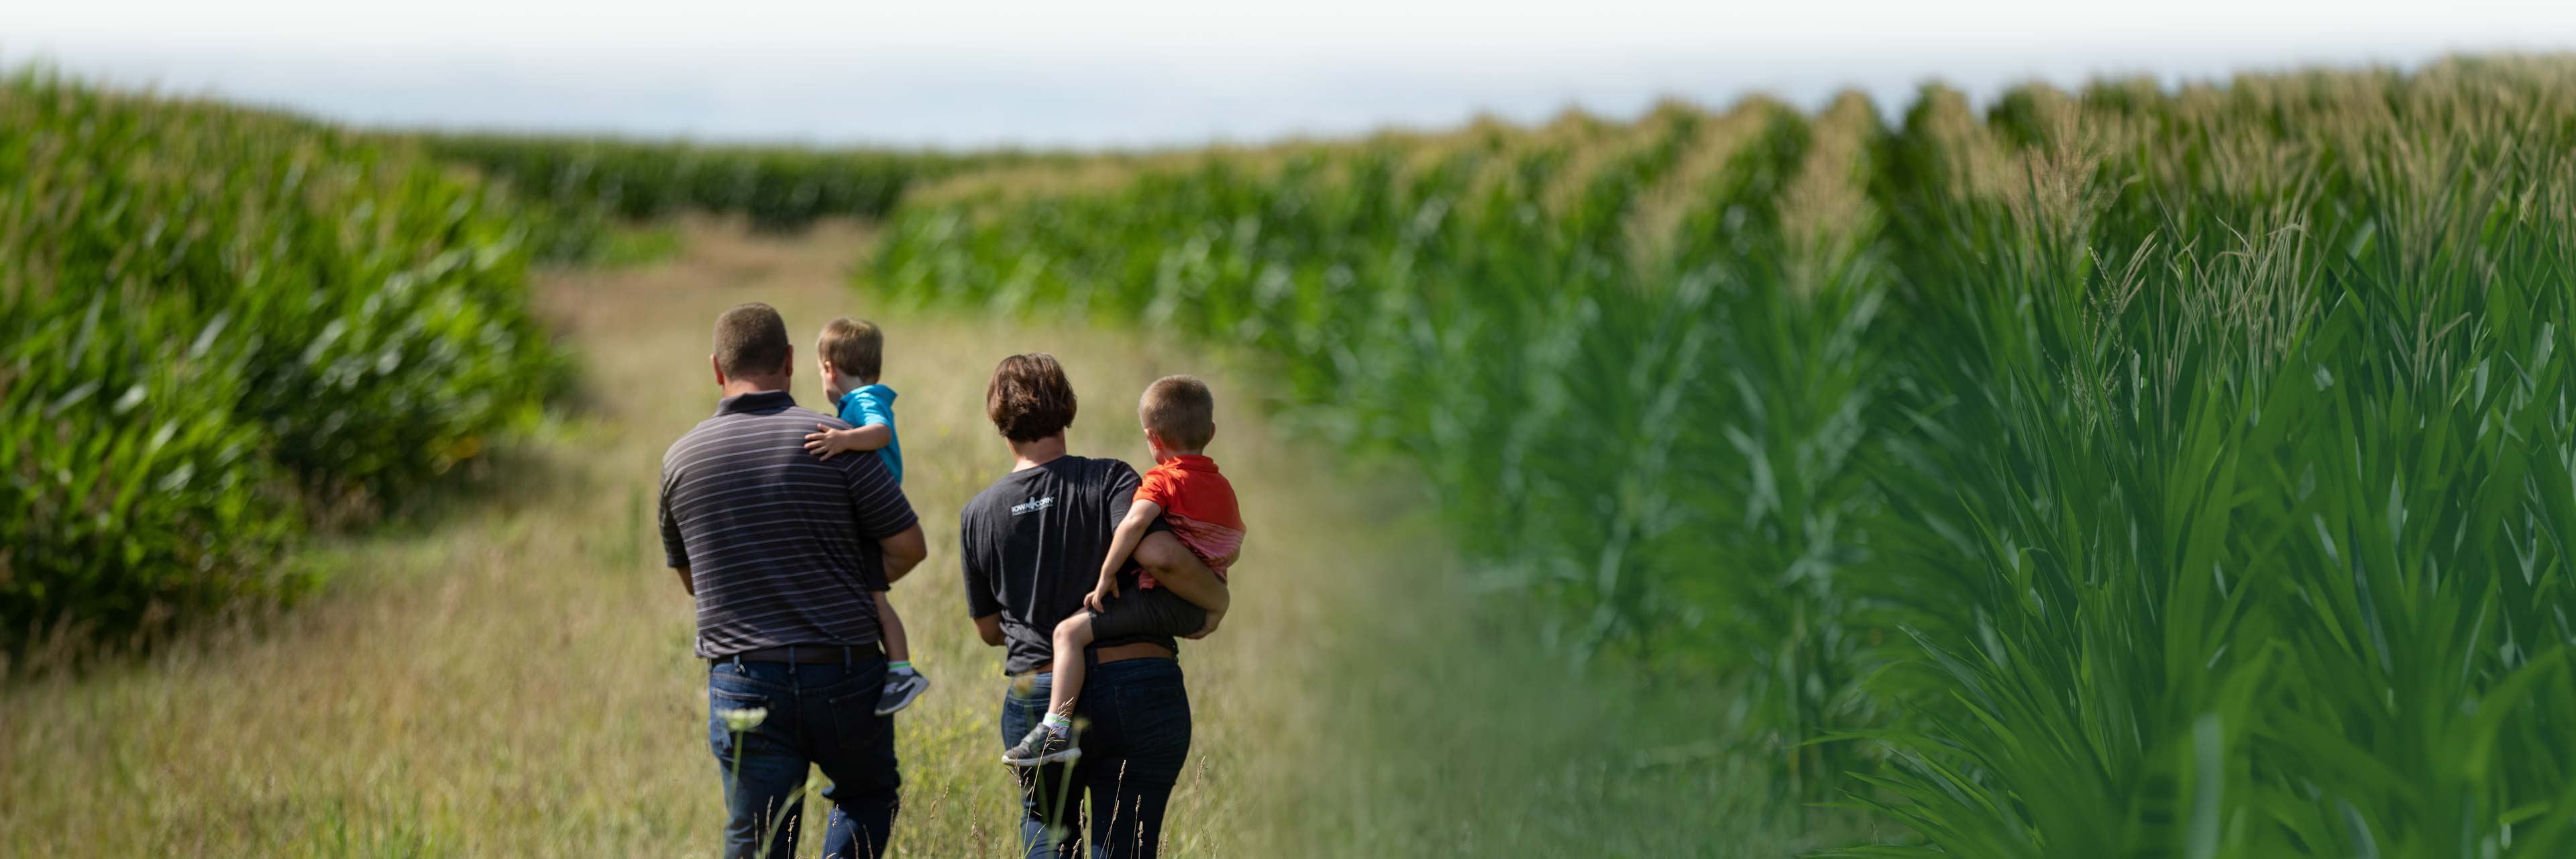 Photo of family walking near corn field